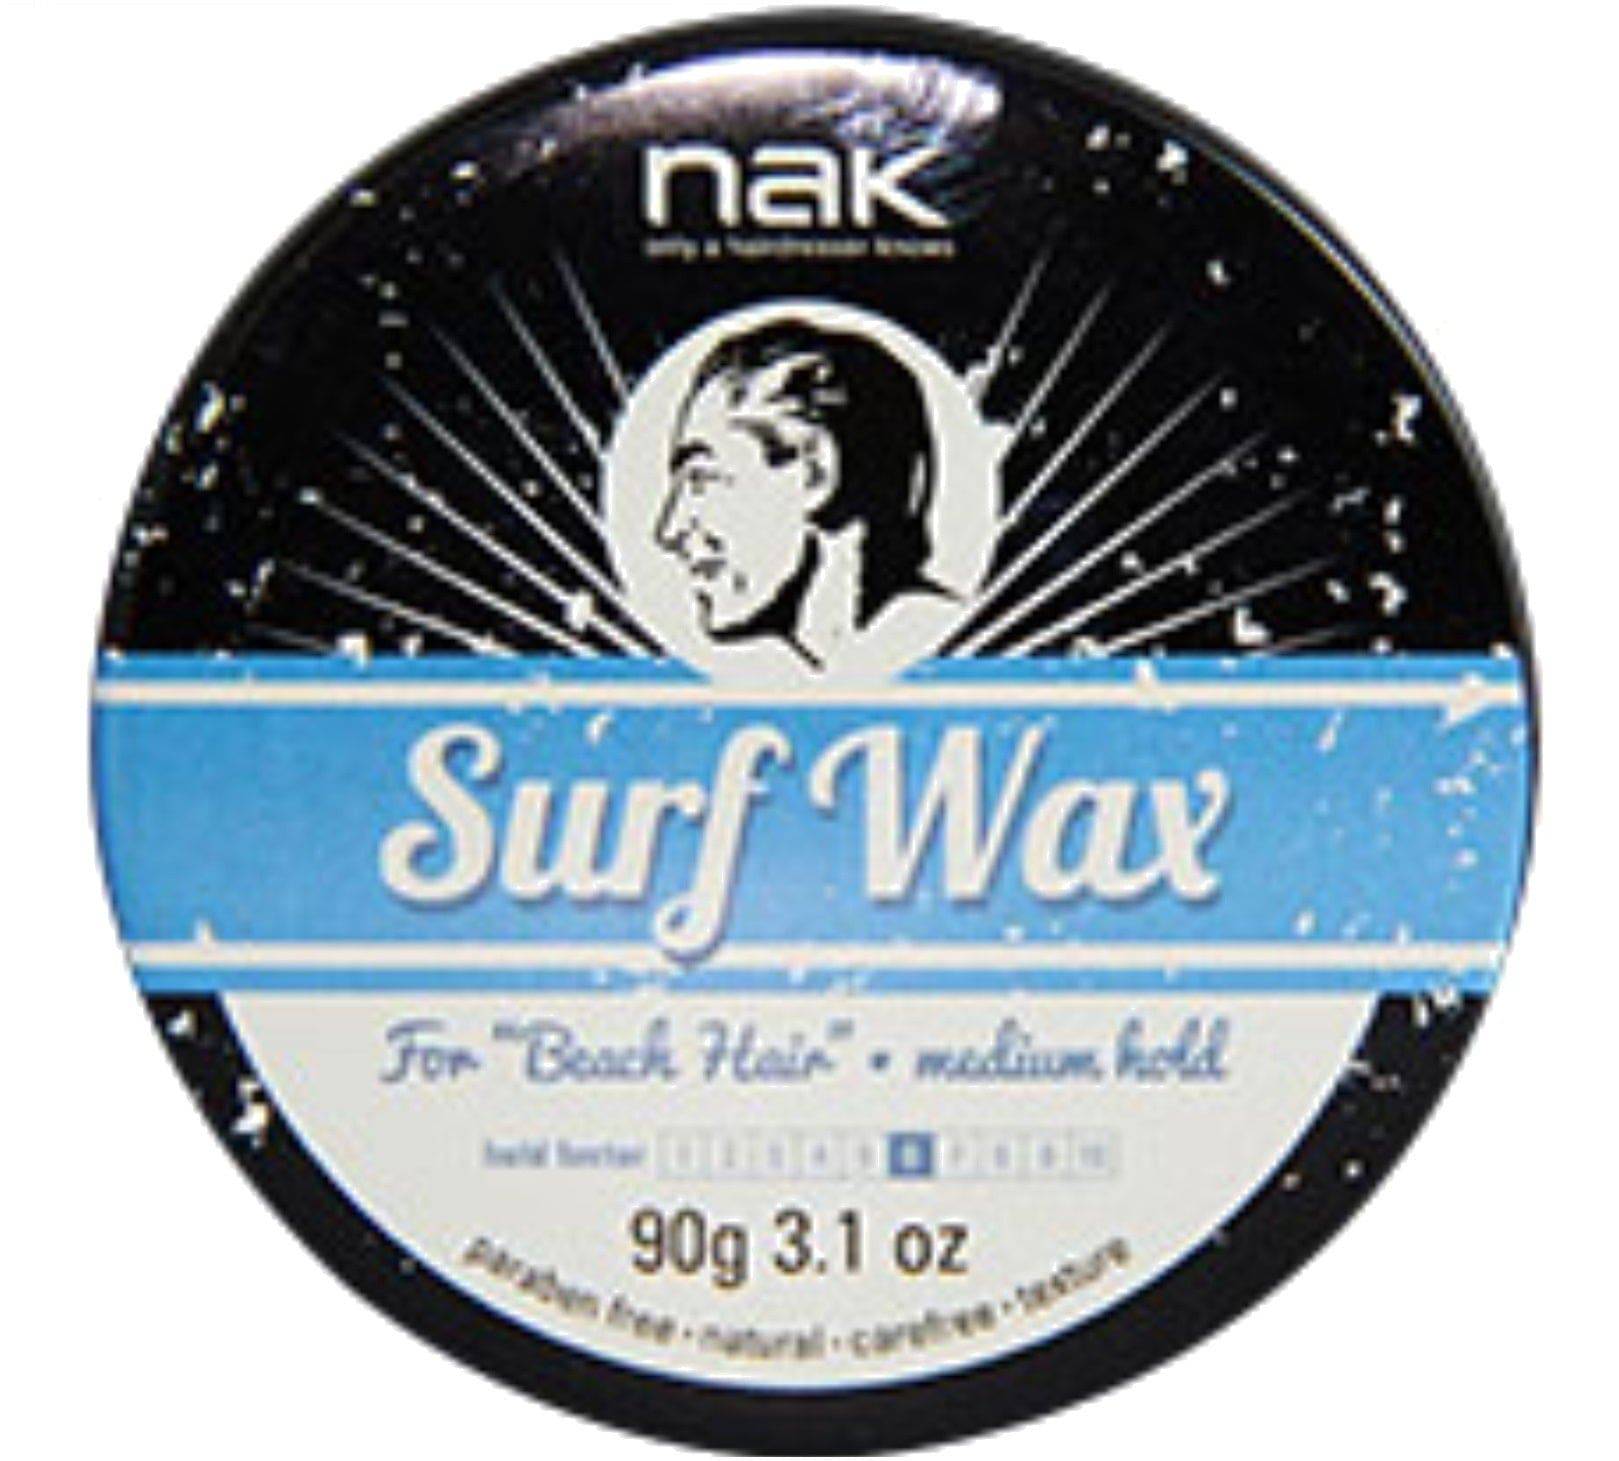 Nak Surf Wax Matt Wax Medium hold 90g - On Line Hair Depot